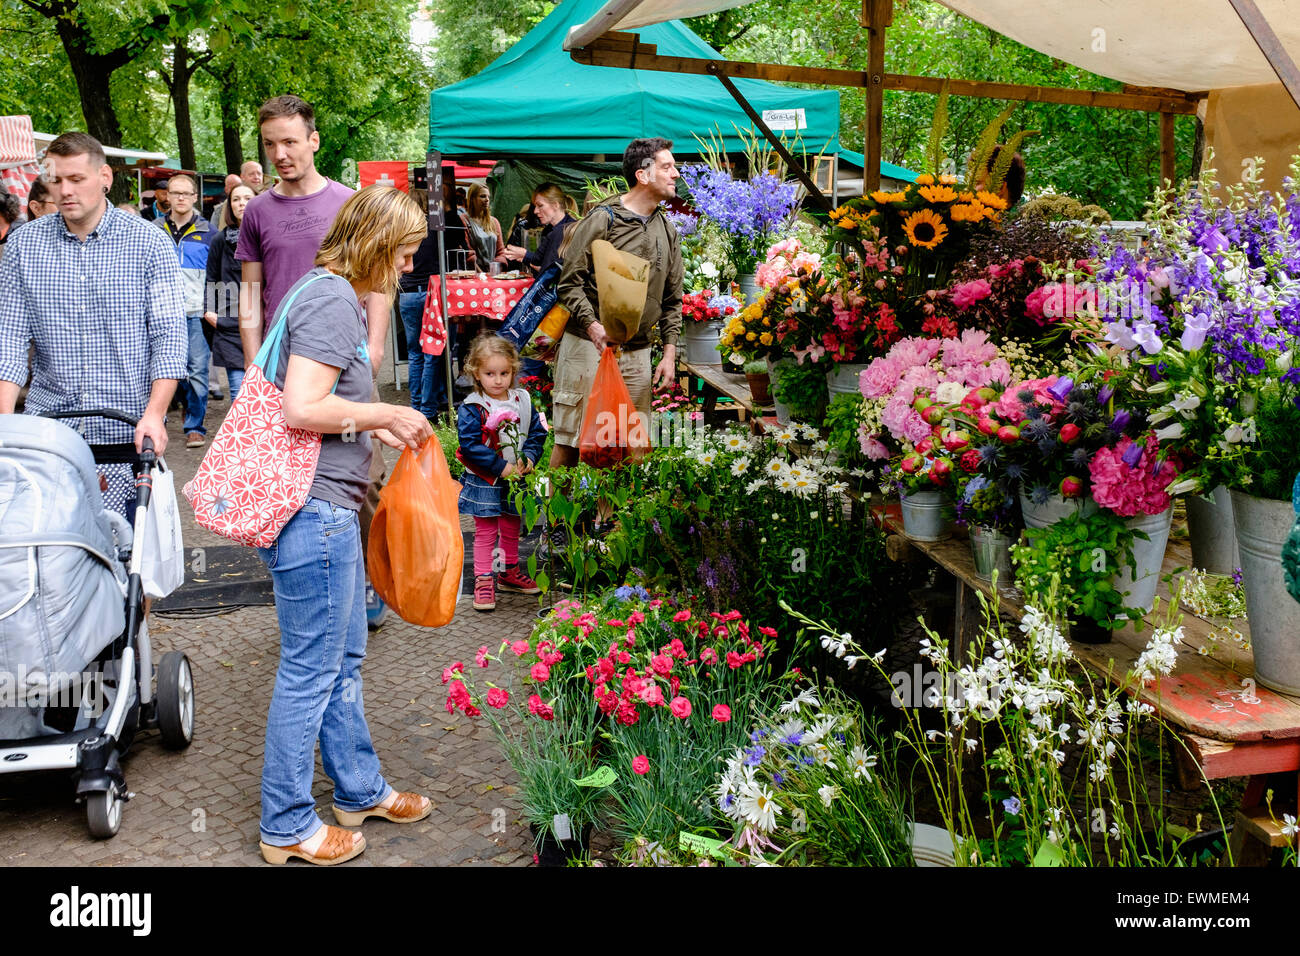 Flower Stand à Boxhagener Platz Farmers' Market le week-end à Friedrichshain Berlin Allemagne Banque D'Images